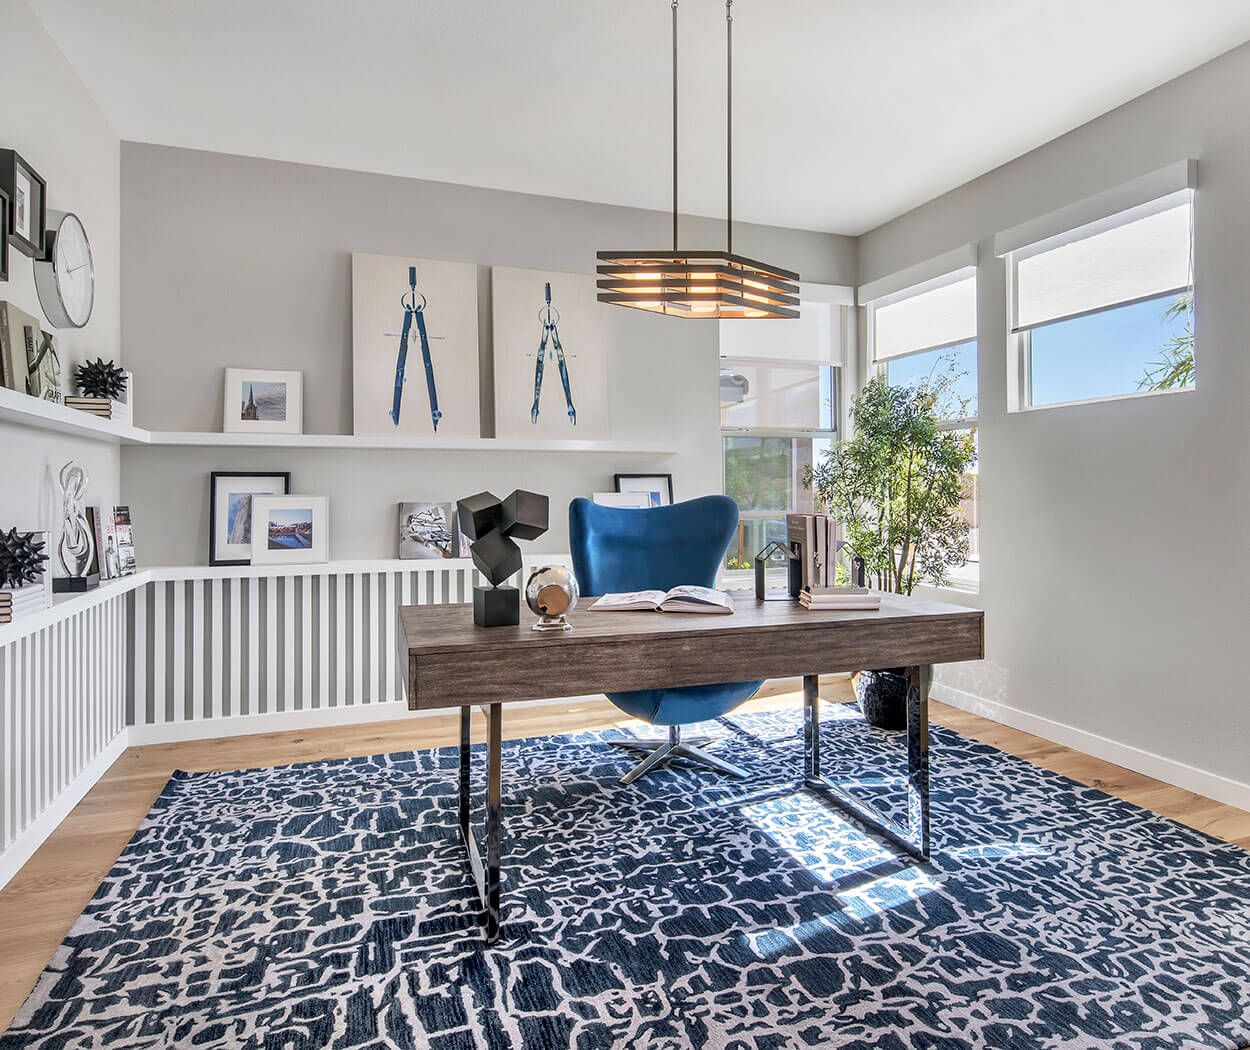 Kobalt - eine perfekte Farbe für ein Home Office